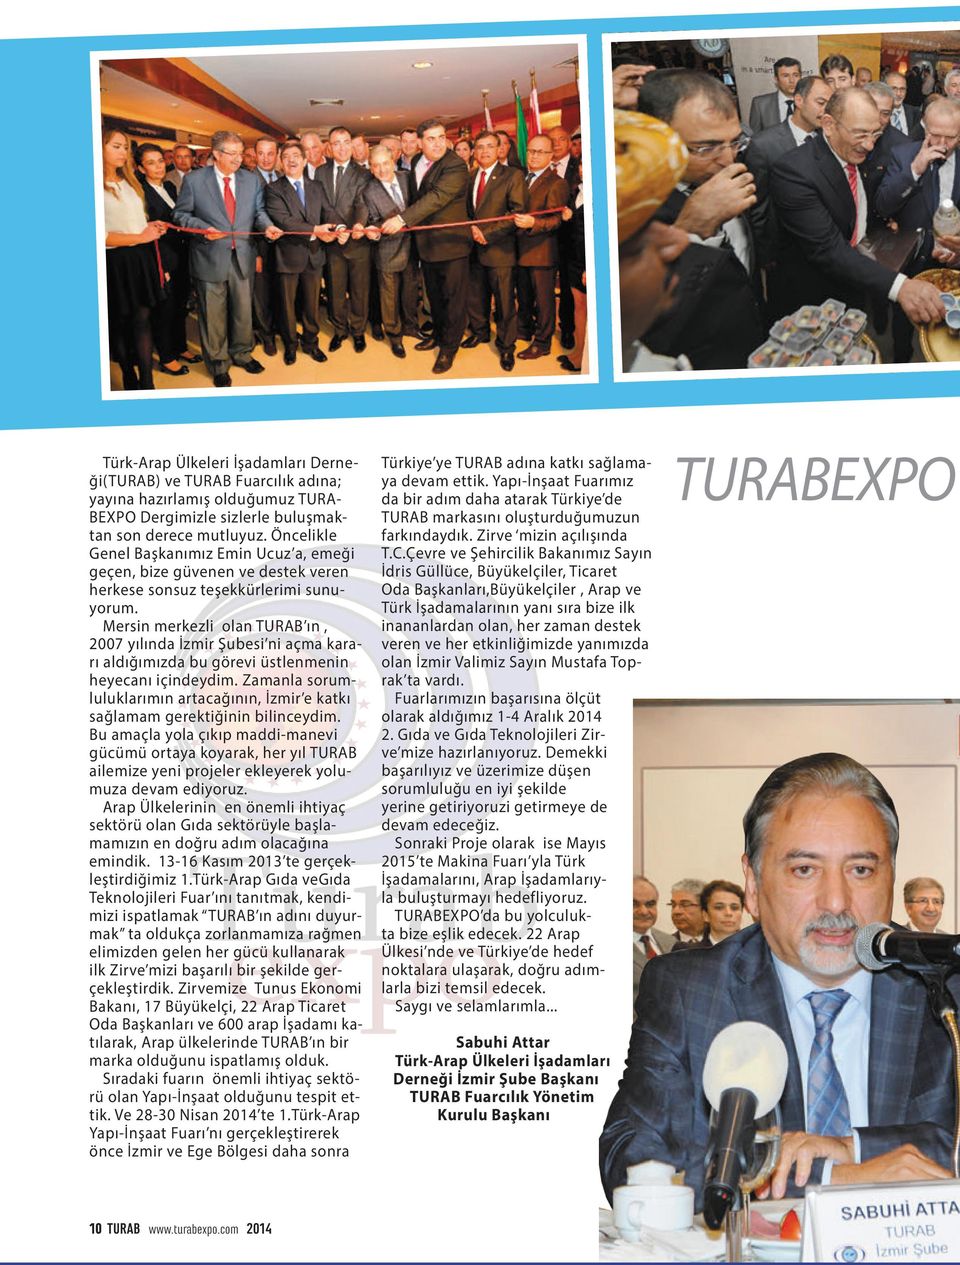 Mersin merkezli olan TURAB ın, 2007 yılında İzmir Şubesi ni açma kararı aldığımızda bu görevi üstlenmenin heyecanı içindeydim.